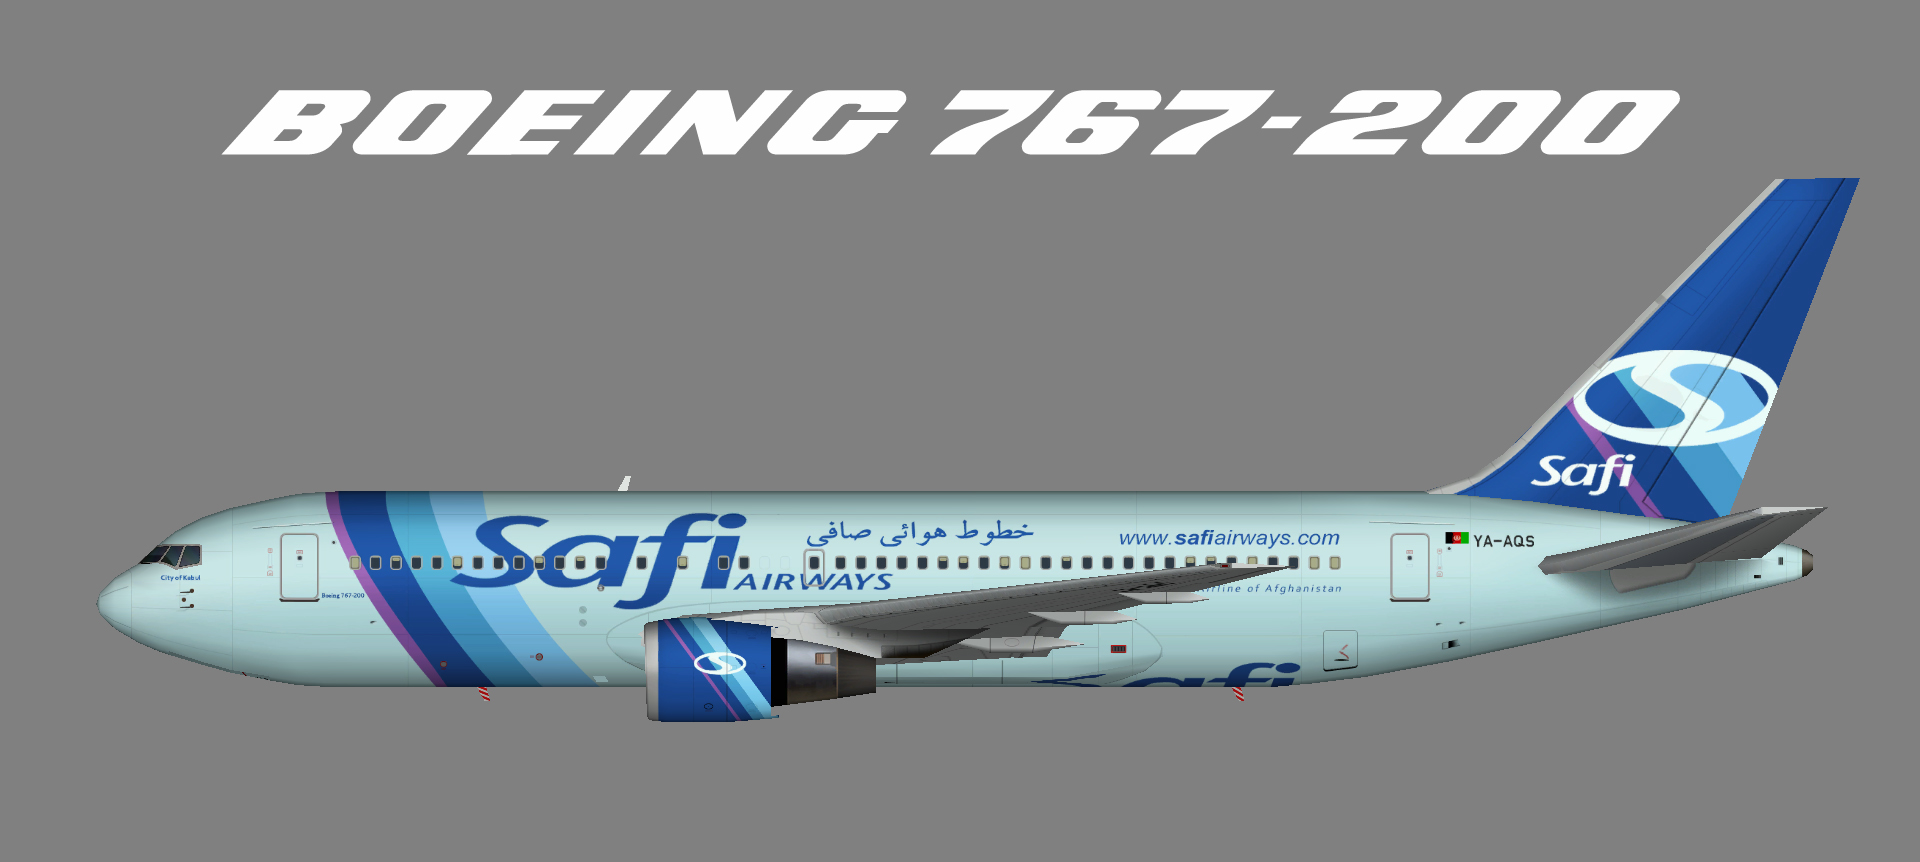 Safi Airways 767-200